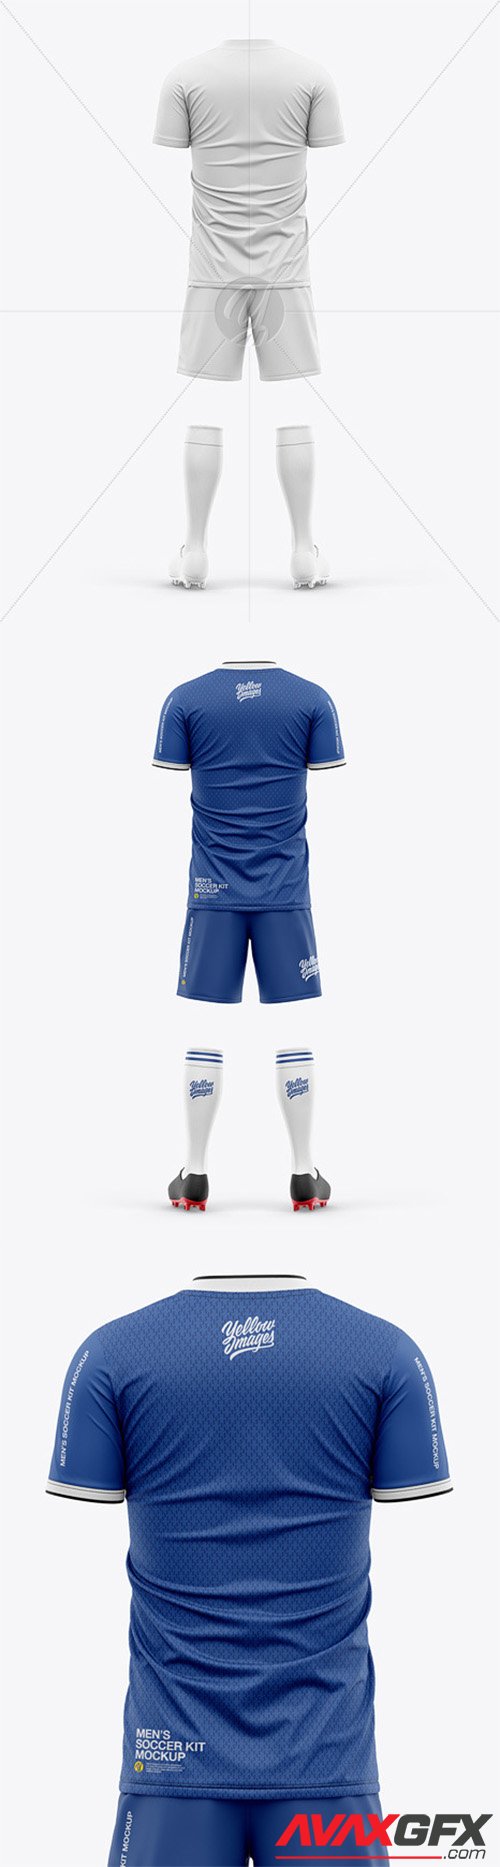 Men's Full Soccer Kit with Short Sleeve Jersey Mockup ...